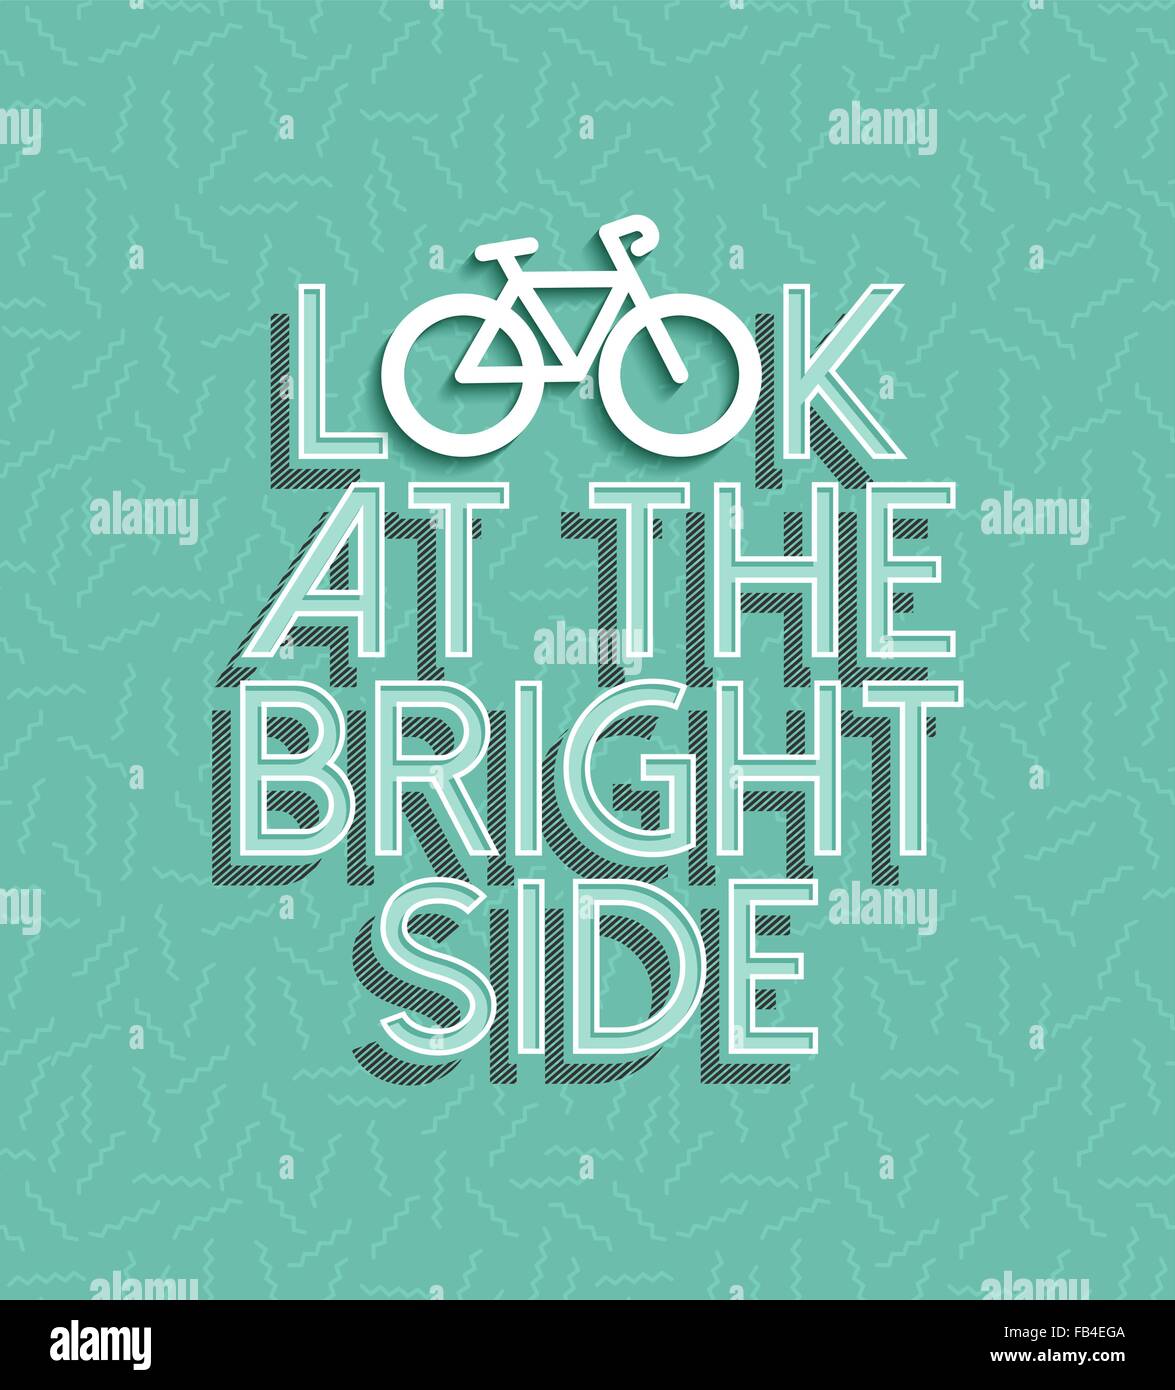 Mit dem Fahrrad Motivation Konzept Plakat, schauen Sie auf der hellen Seite Text Zitat mit Fahrrad Silhouette Umriss und Retro-Elementen. EPS10 Stock Vektor